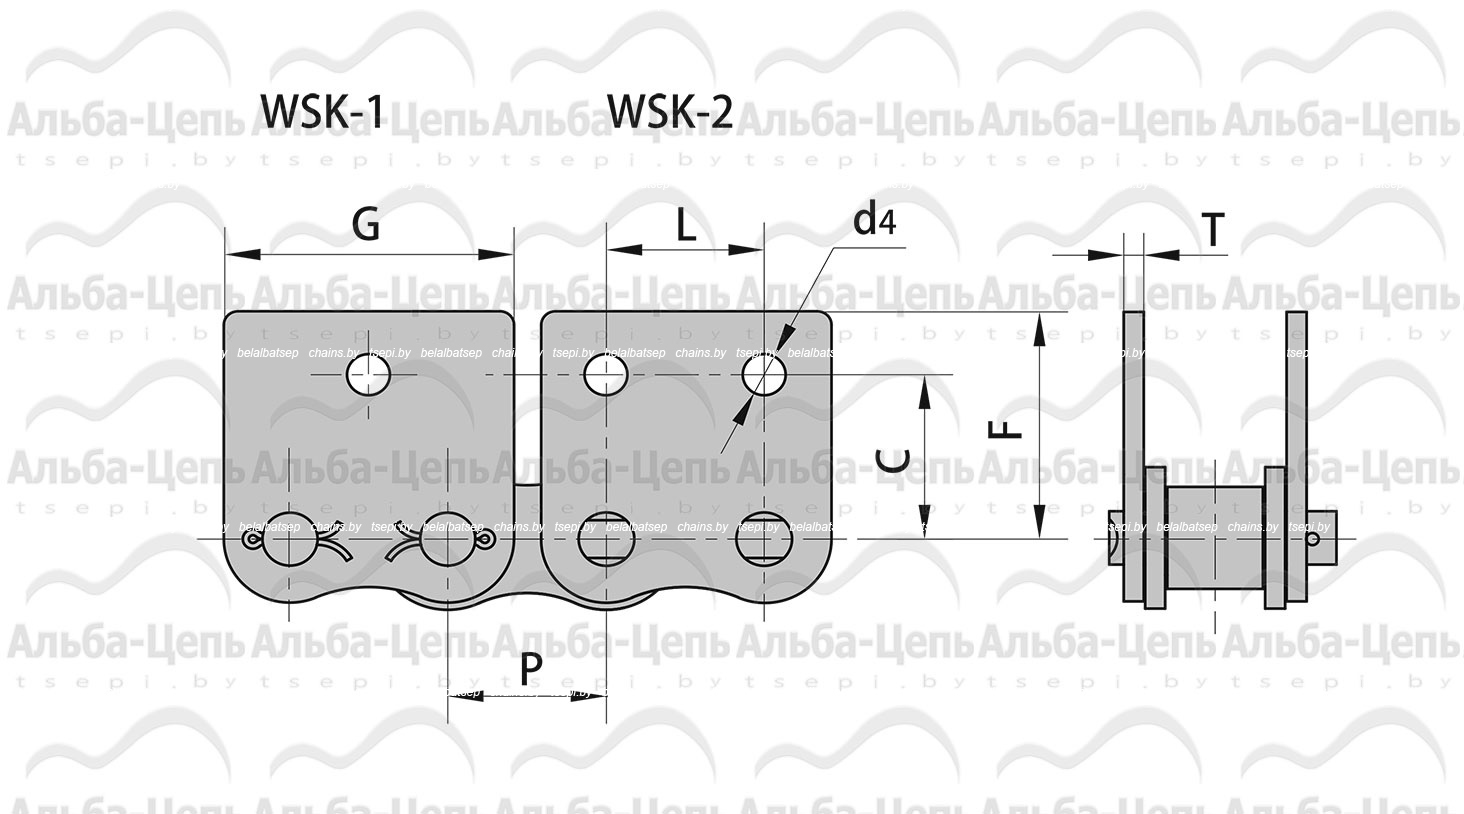 Транспортерные цепи на базе приводных роликовых с прямым контуром пластин ТИП WSK-1